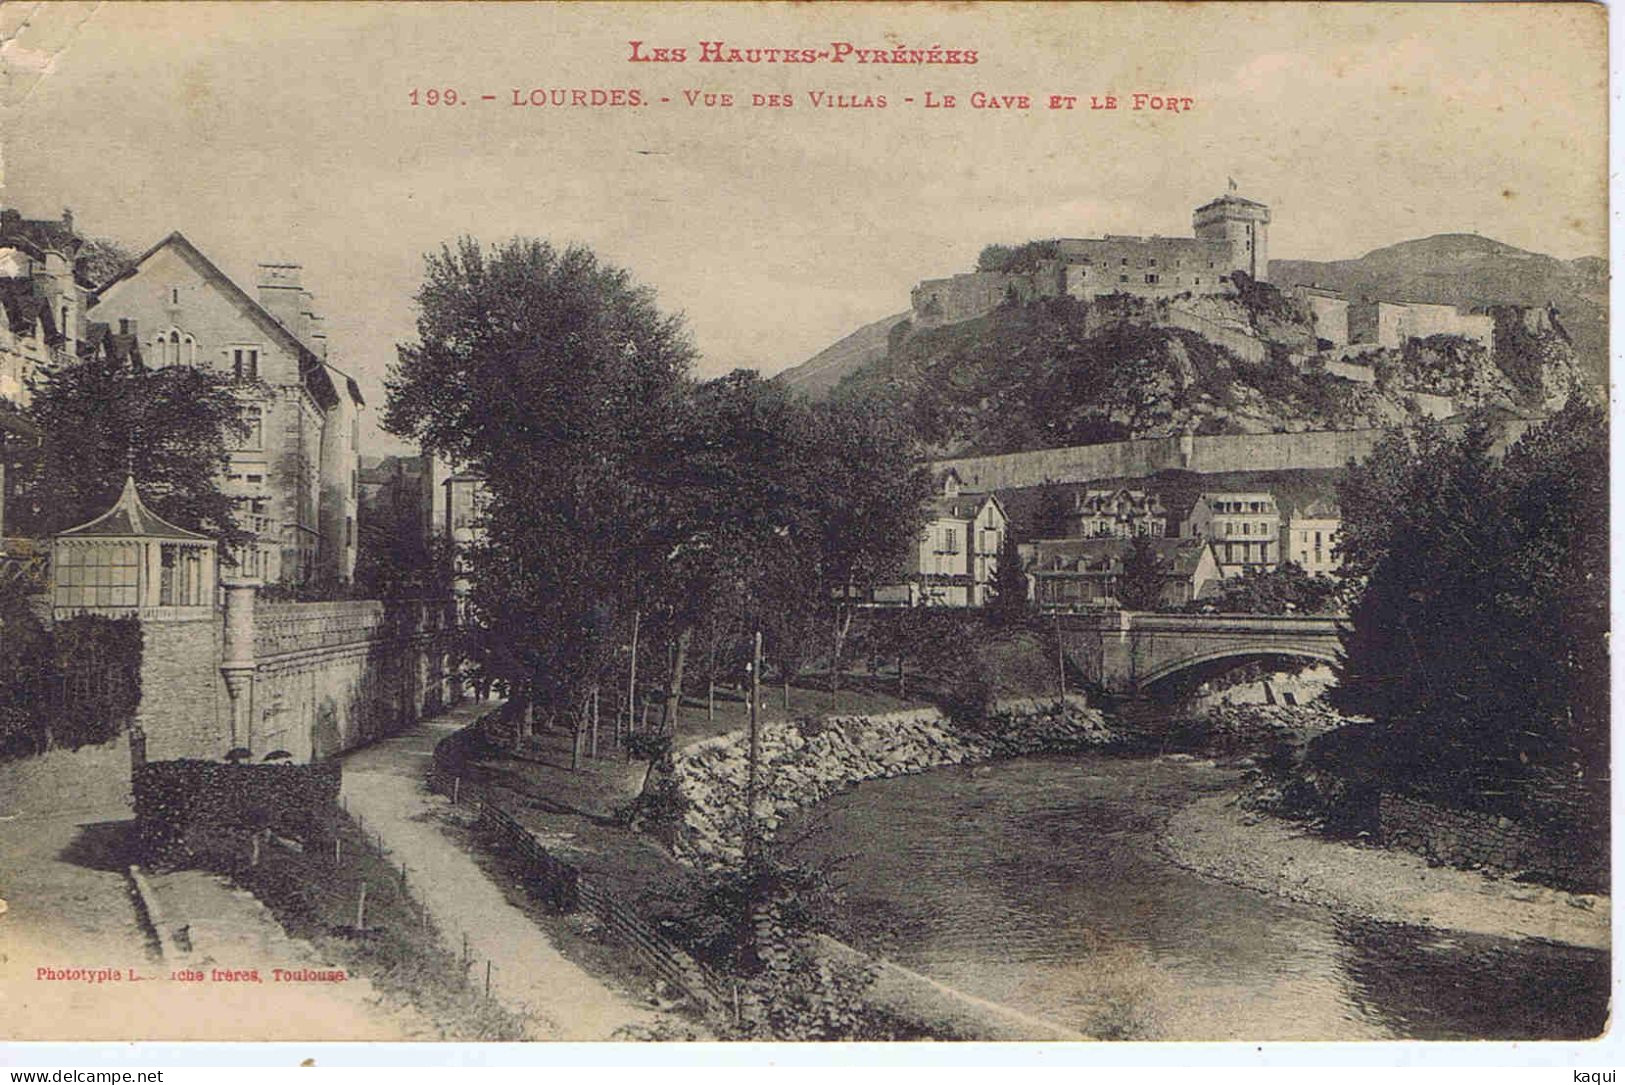 HAUTES-PYRENEES - LOURDES - Vue Des Villas - Le Gave Et Le Fort - Phototypie Labouche - LF N° 199 - Lourdes